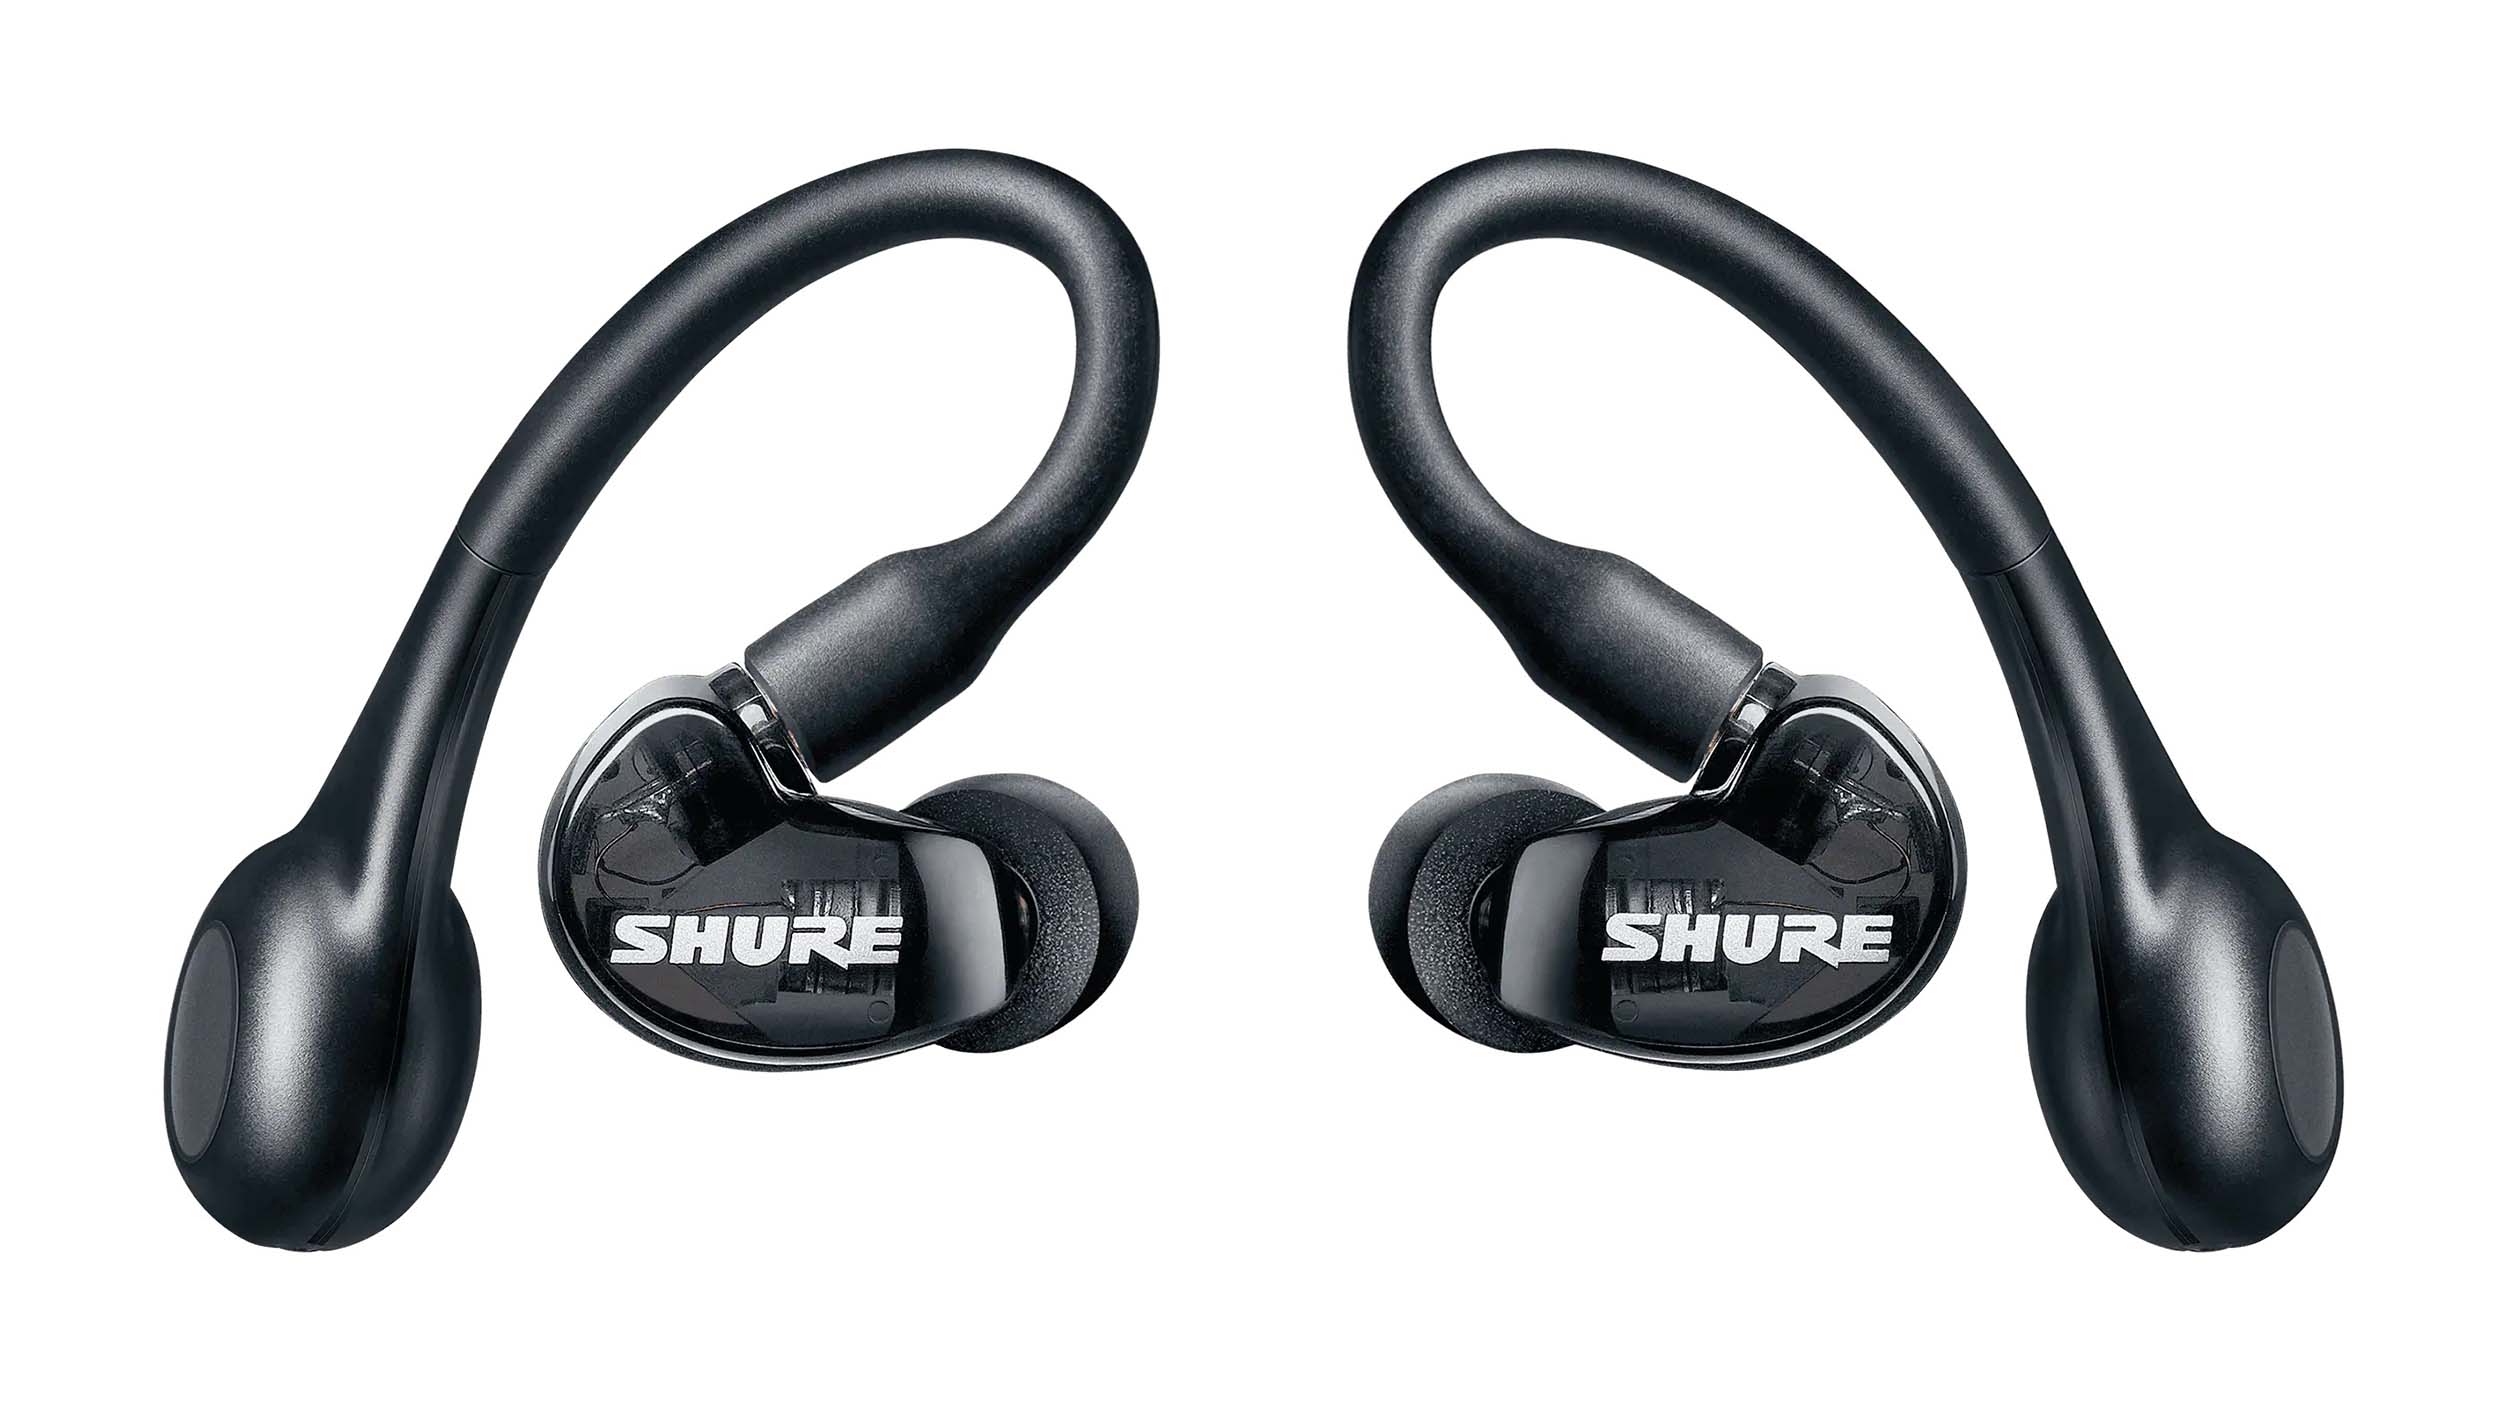 Shure SE21DYBK+TW2, Gen 2 True Wireless Sound Isolating Earphones by Shure